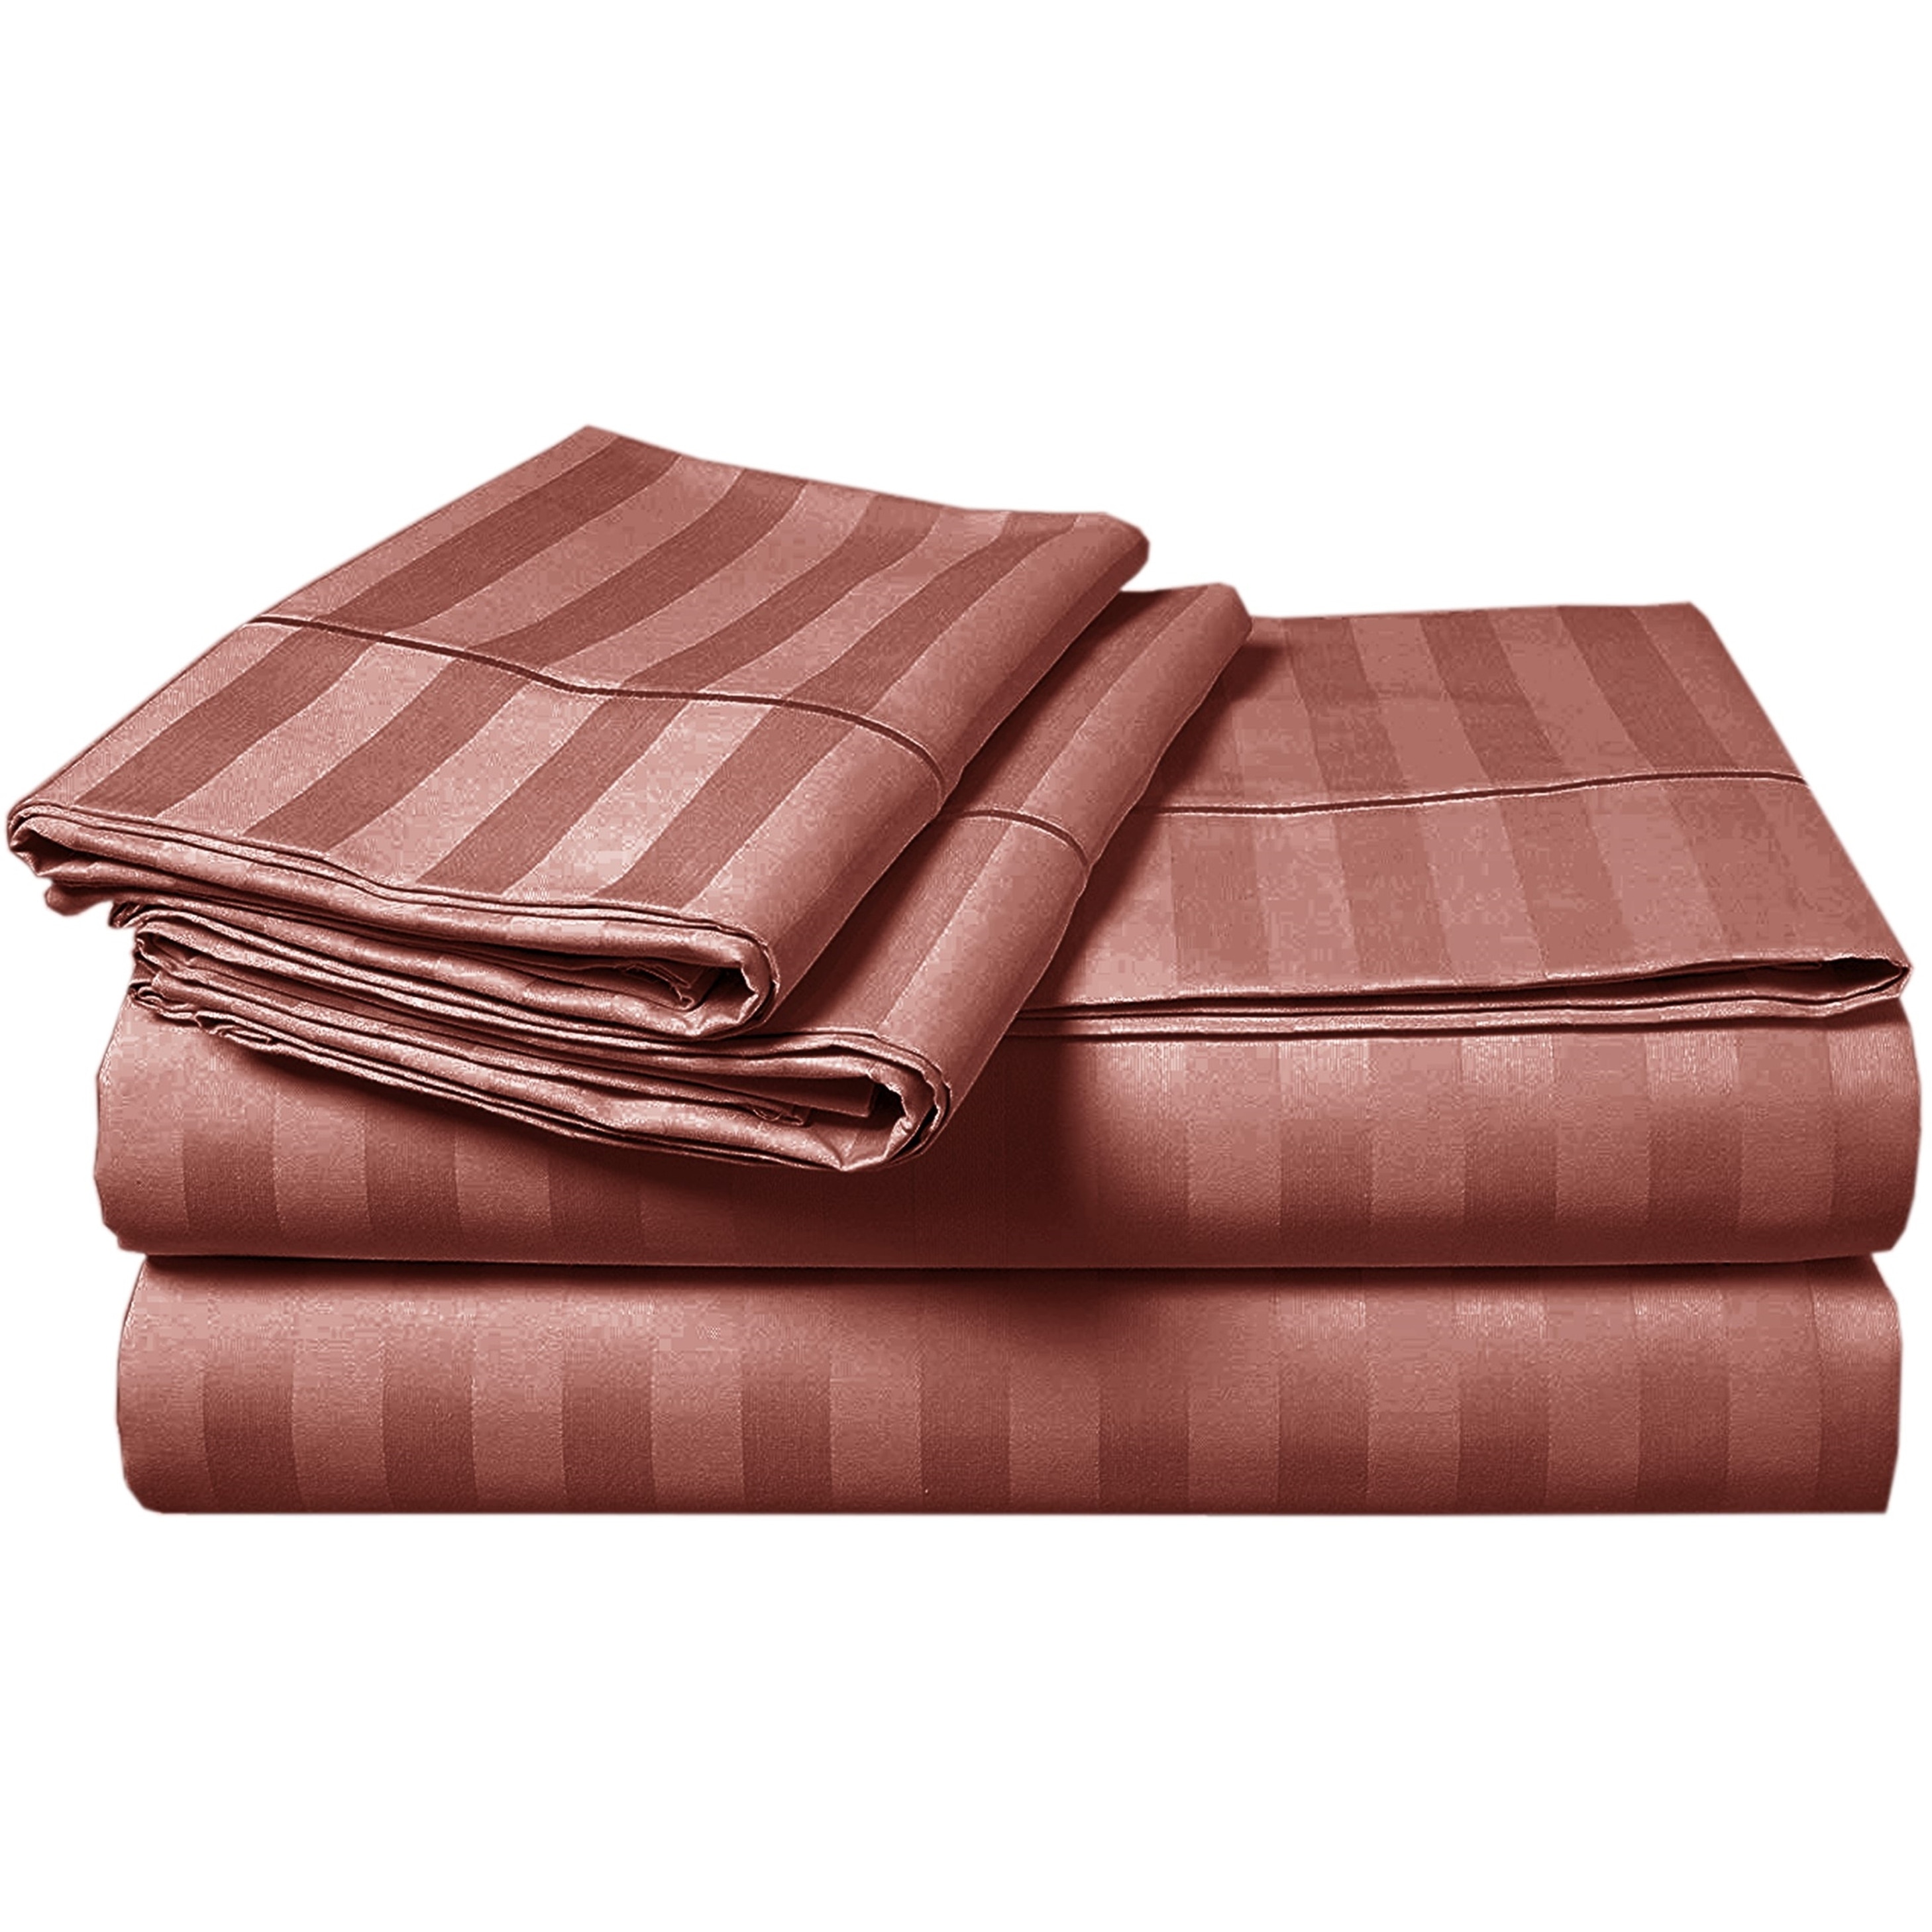 Exquisite 650TC Genuine Cotton Blend Sheets Lavish Solid/Striped Sets